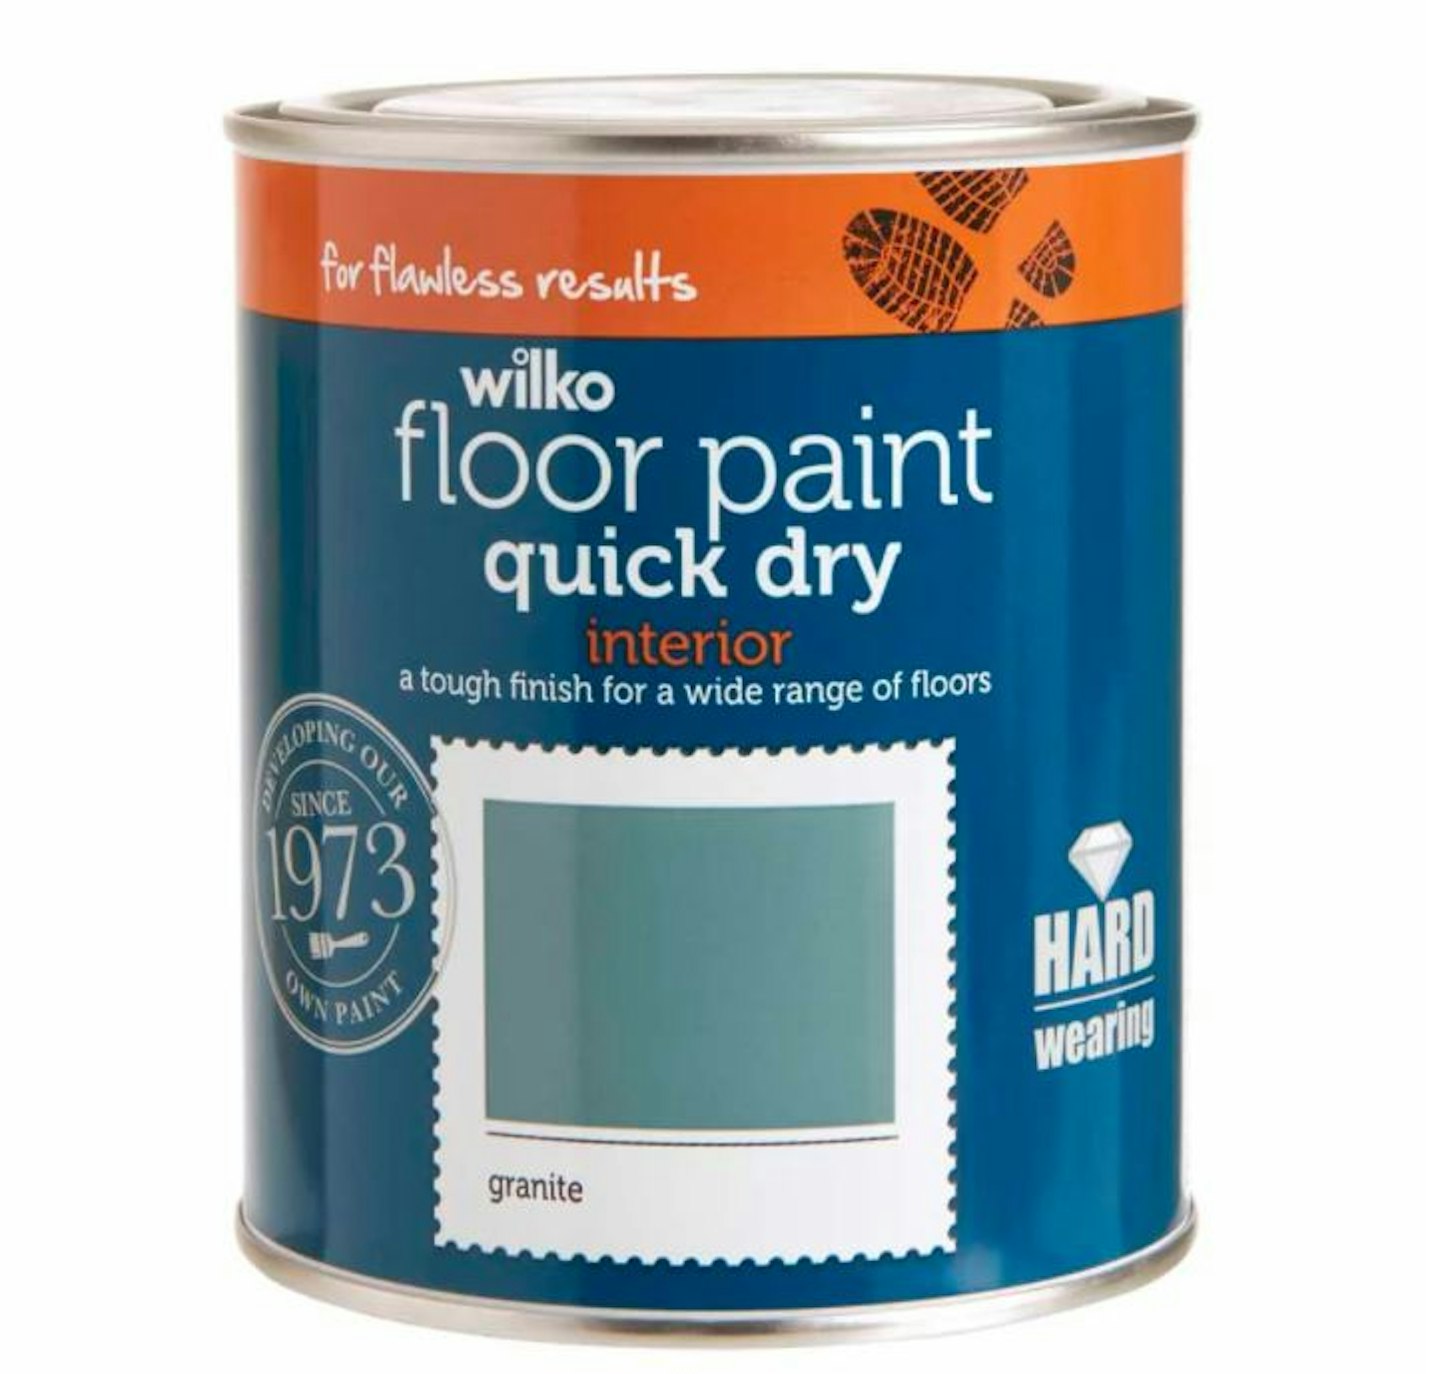 Wilko Quick Dry Floor Paint